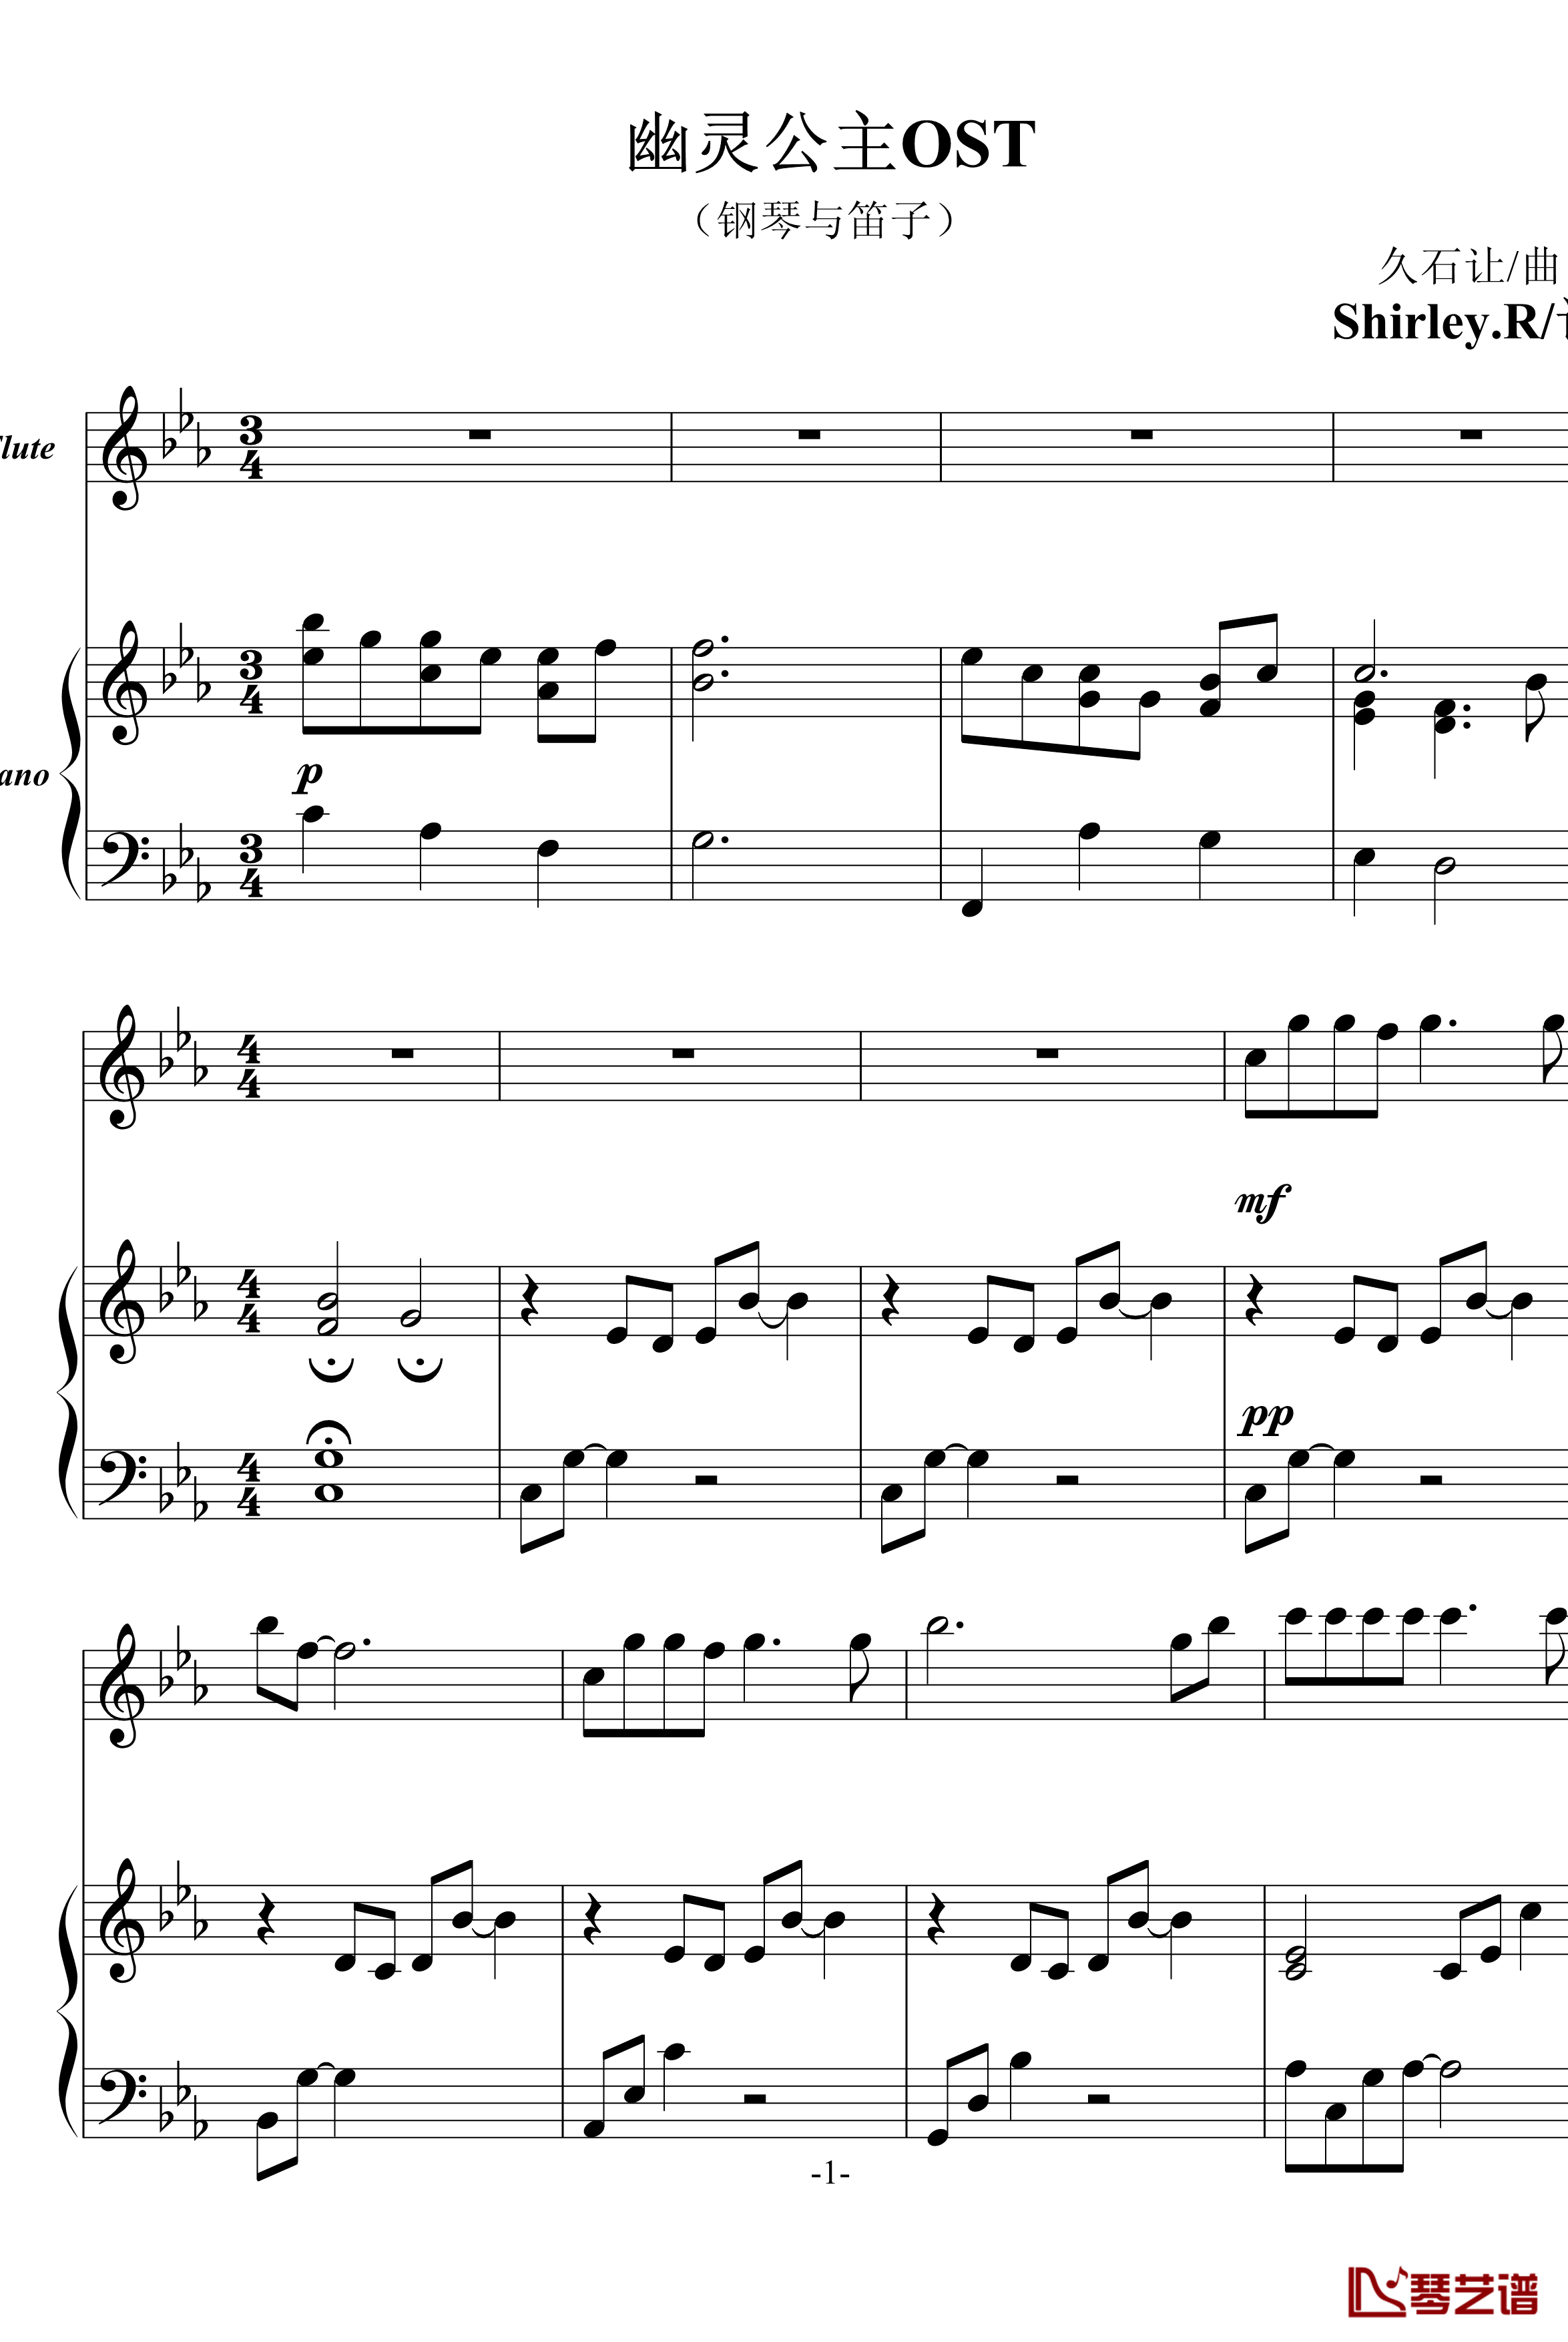 幽灵公主笛子与钢琴钢琴谱-OST-久石让1